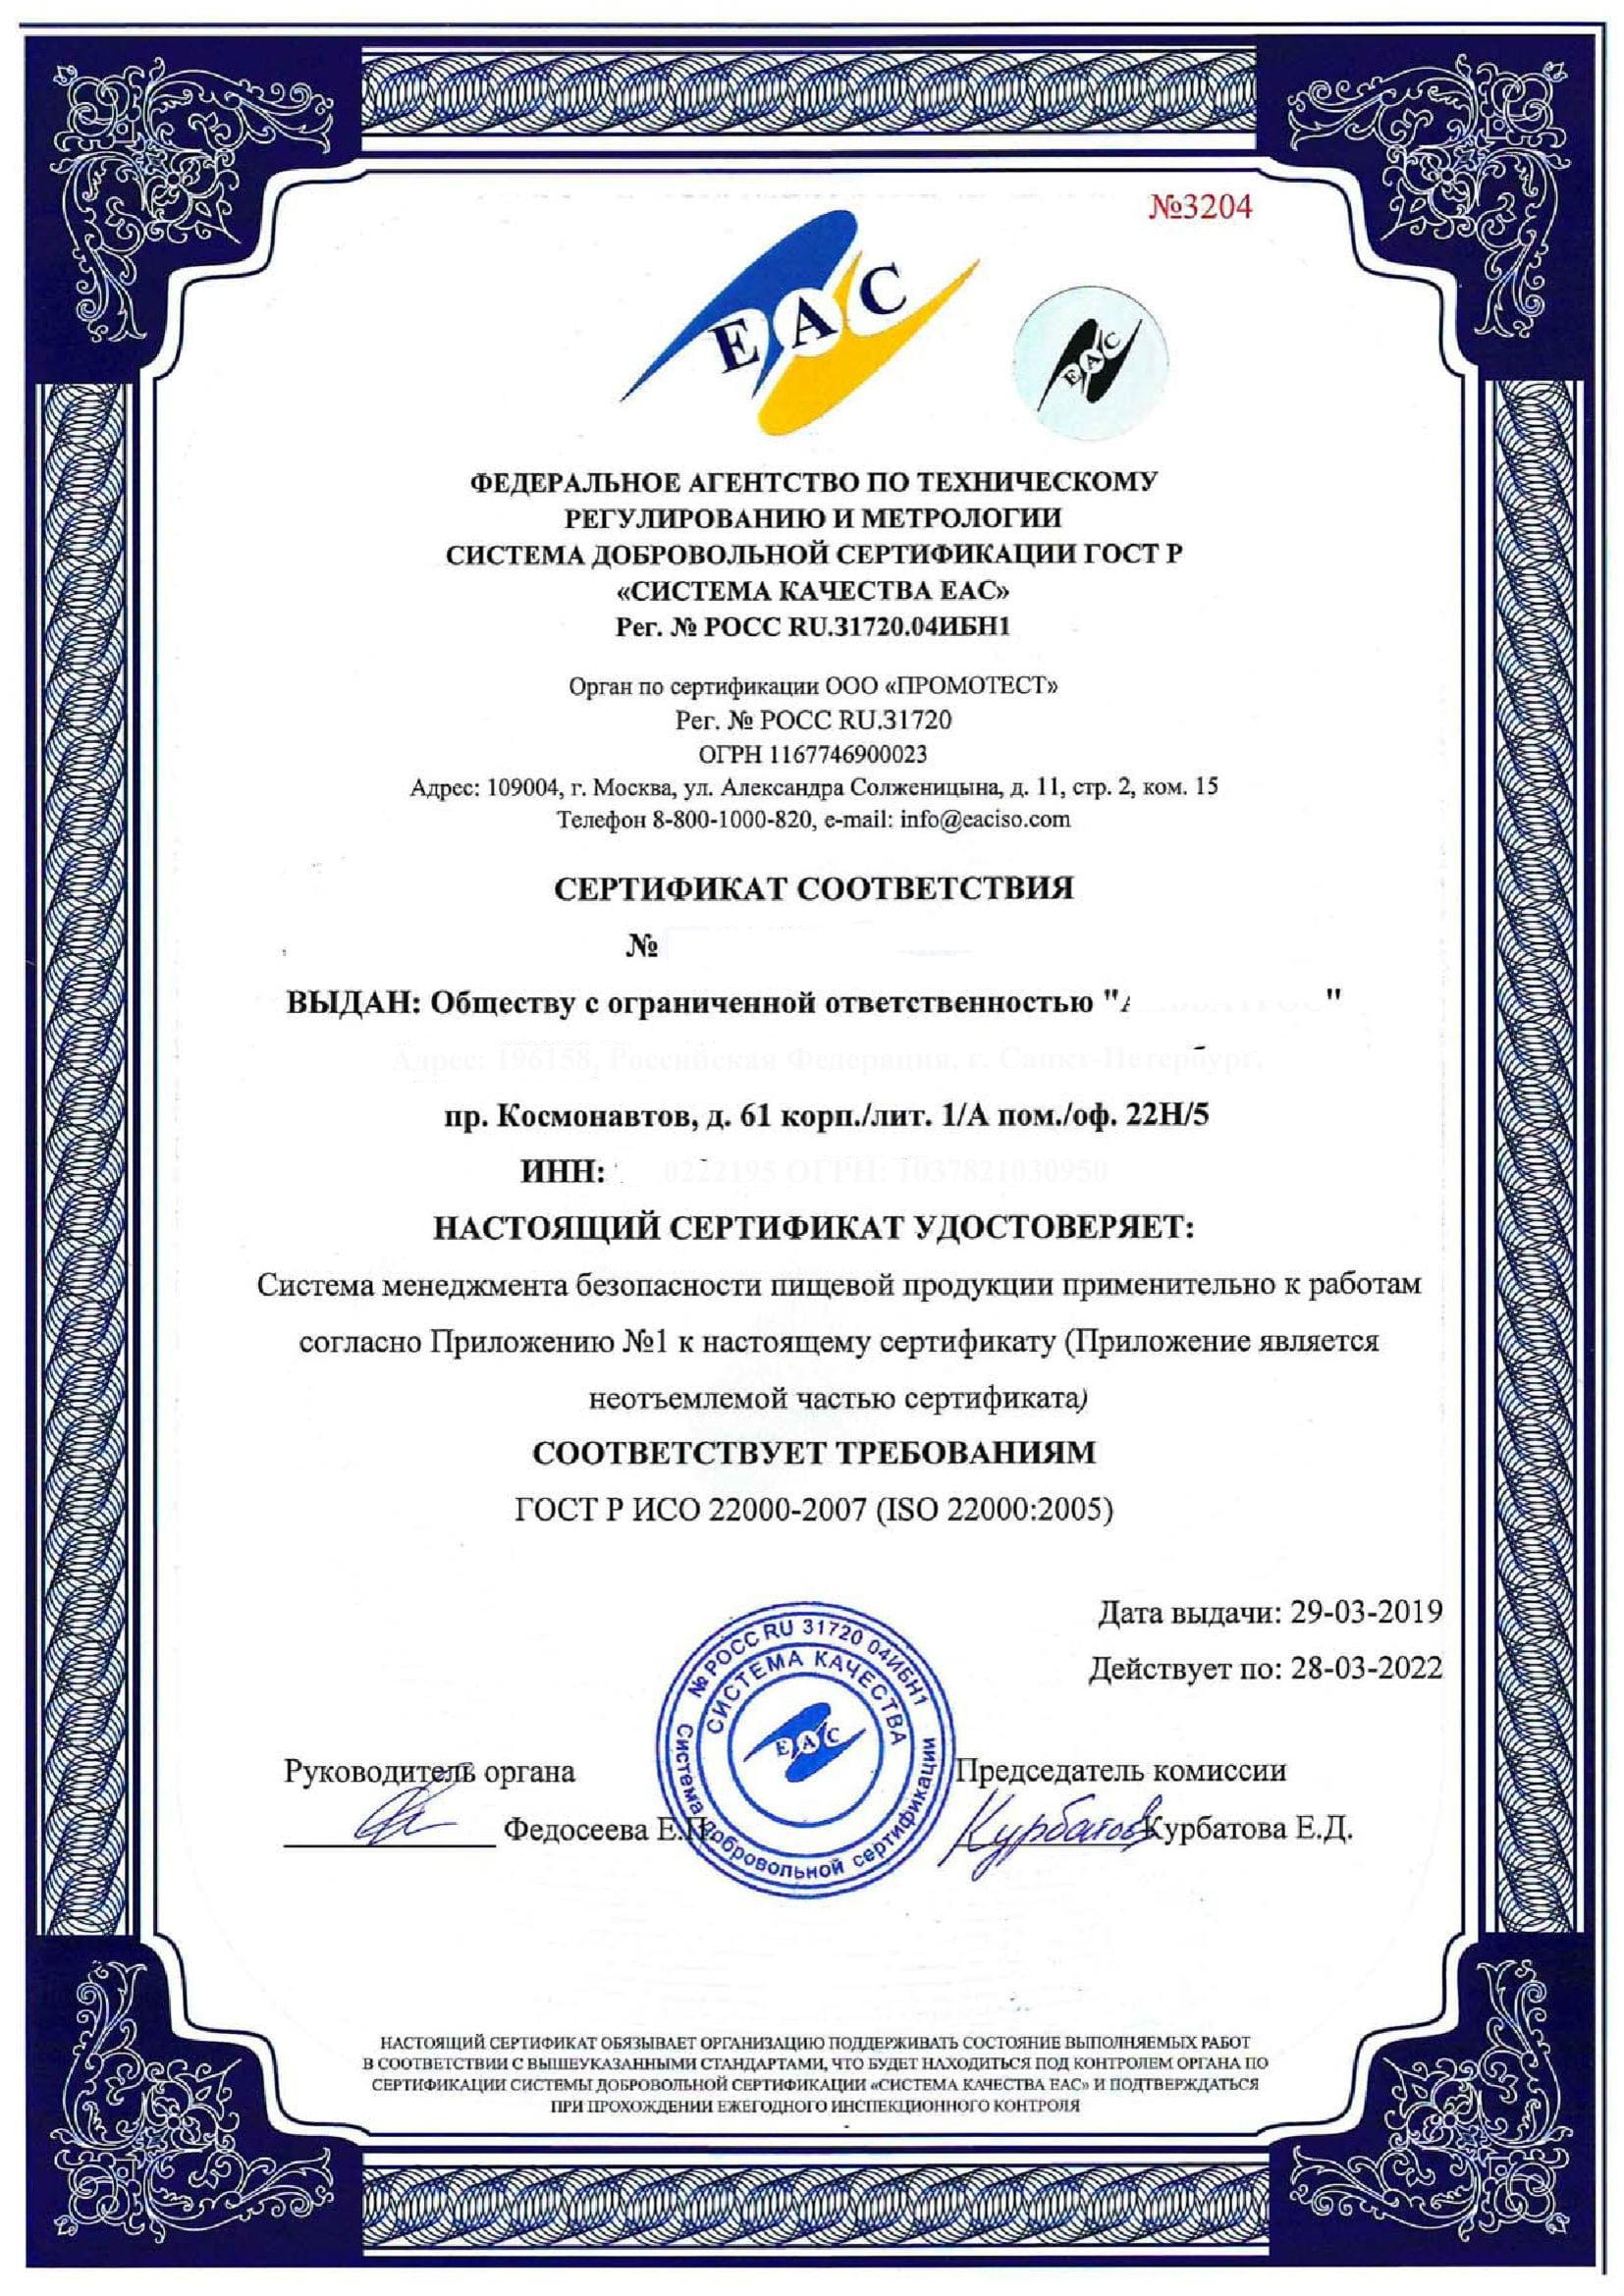  сертификат ГОСТ Р ИСО 22000 2007